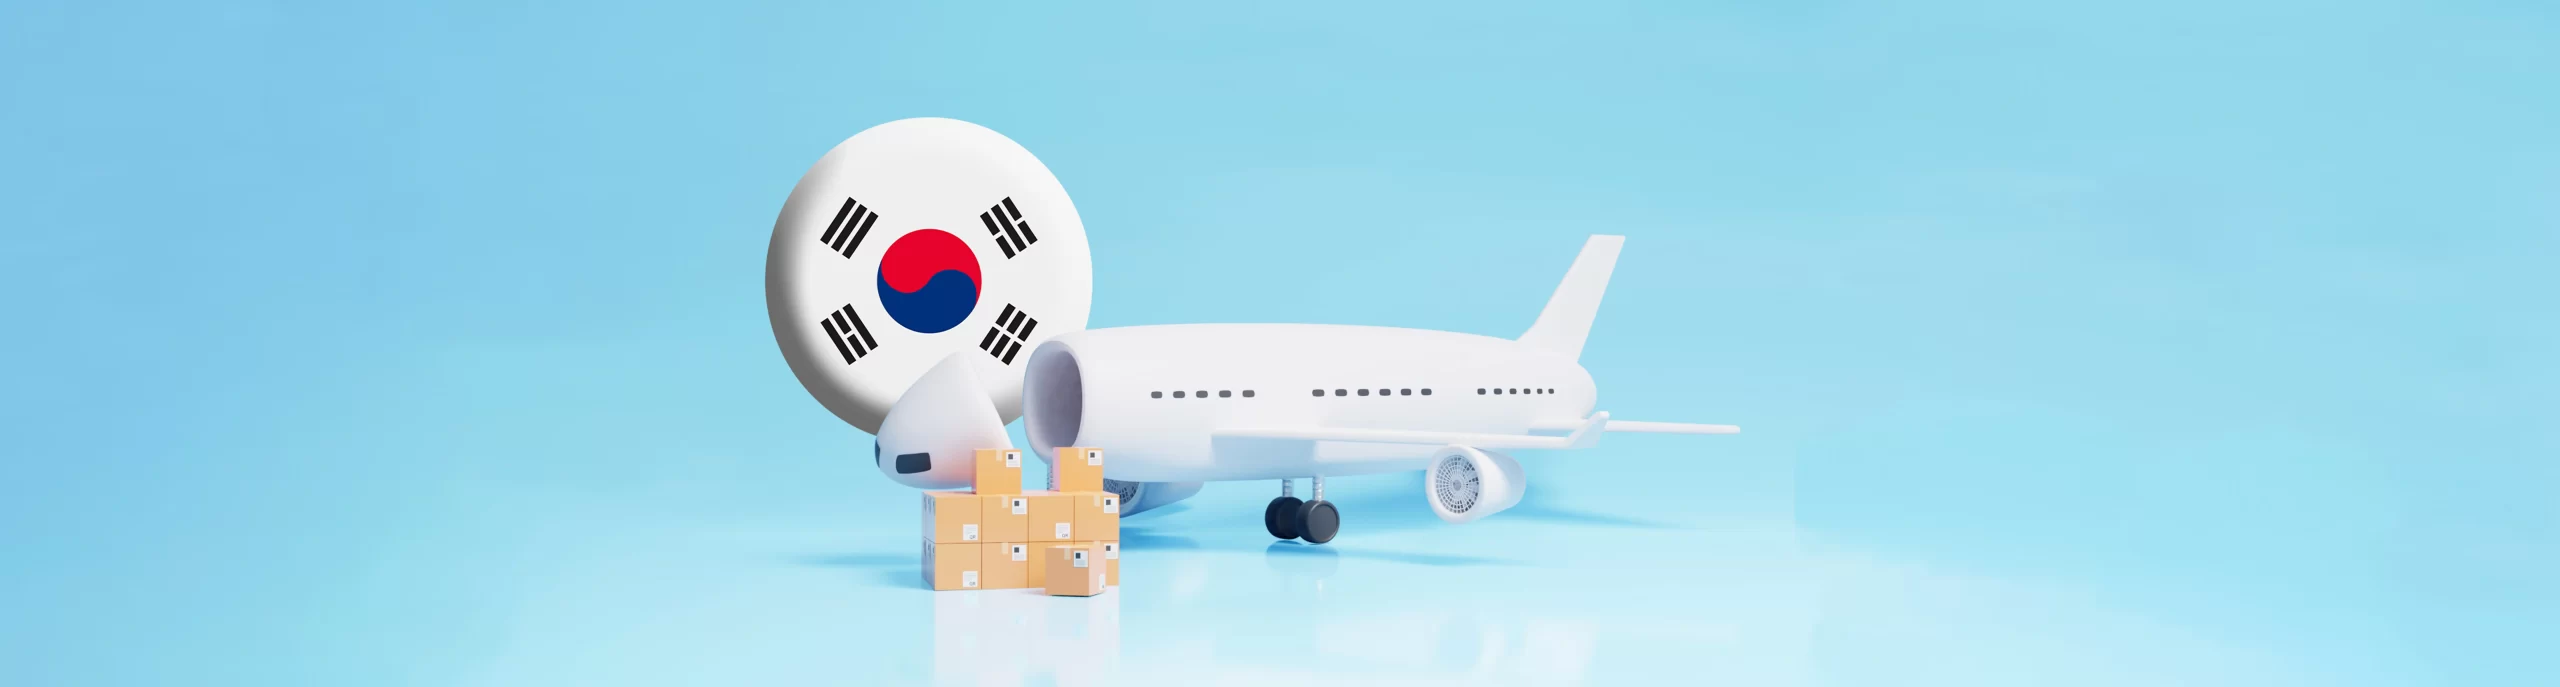 حمل و نقل هوایی کره جنوبی